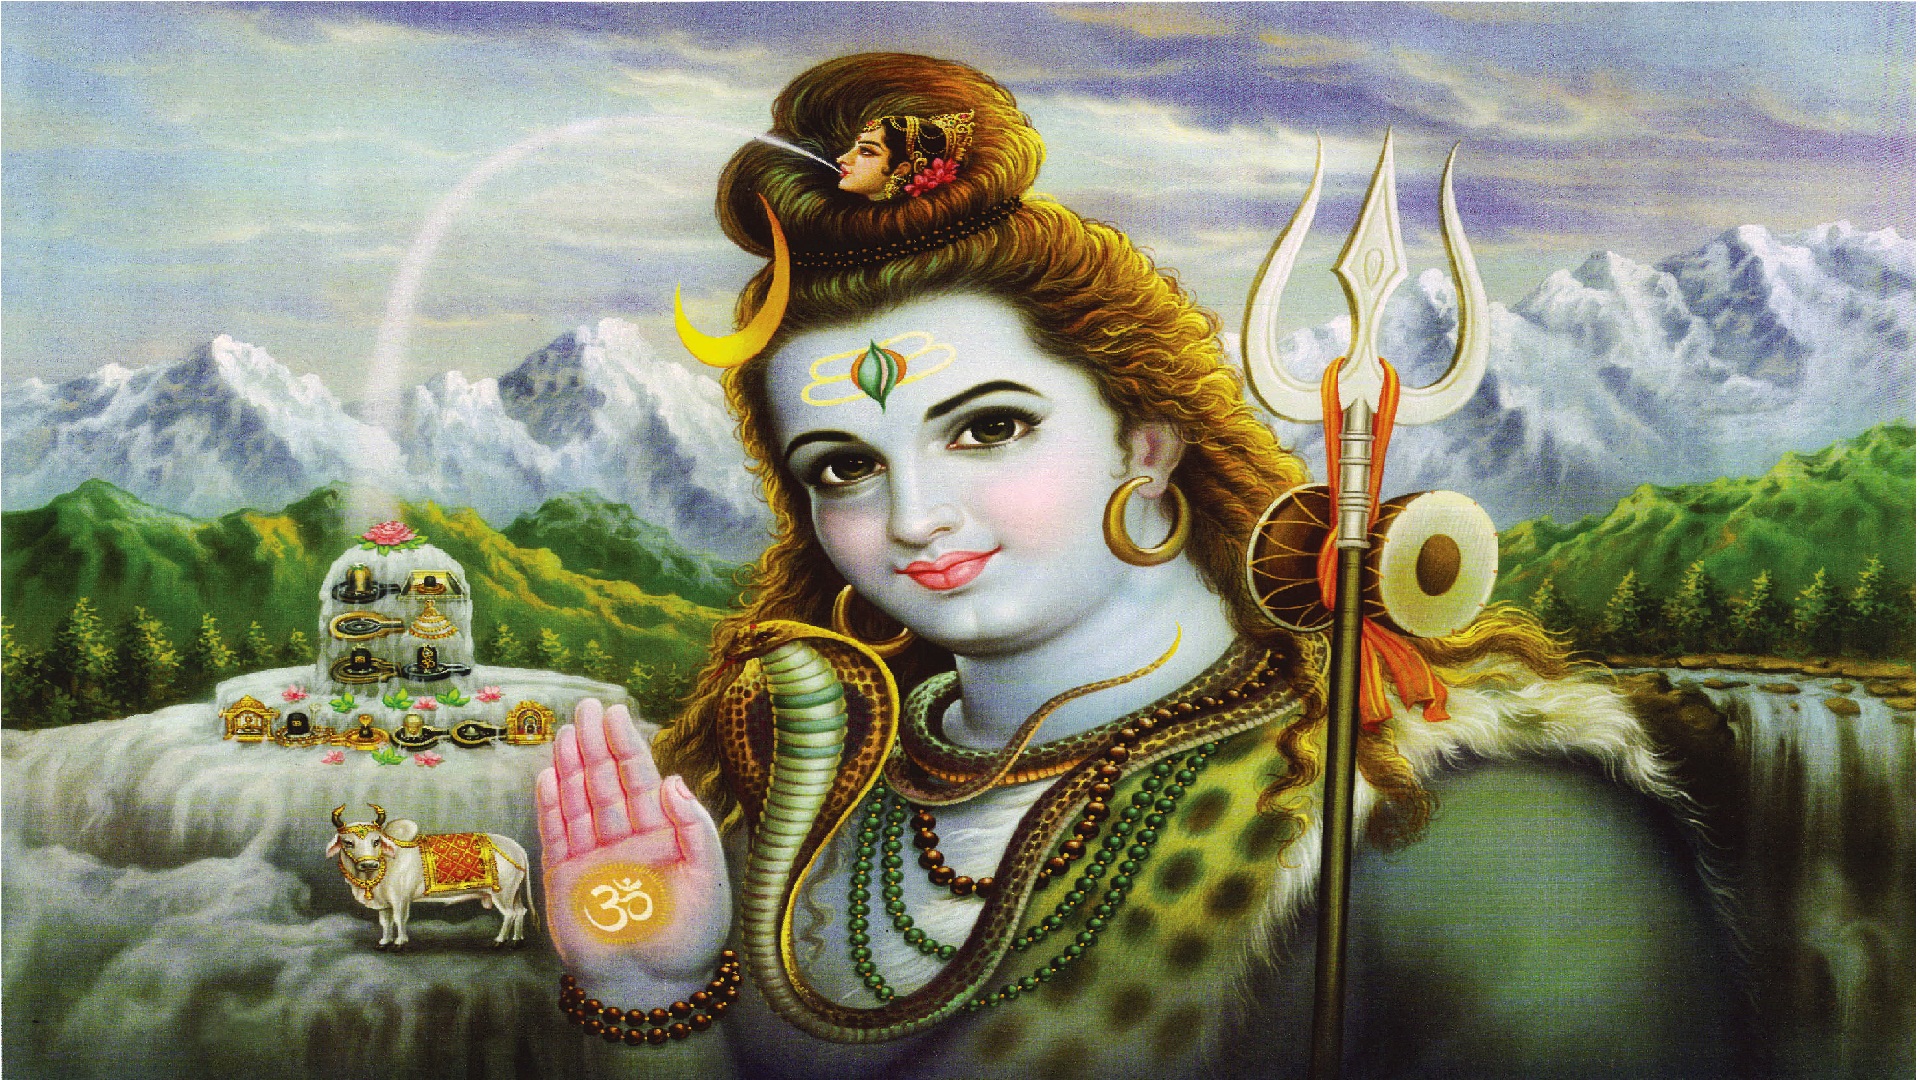 इन 3 राशियों पर सबसे ज्यादा मेहरबान होते हैं भगवान शिव